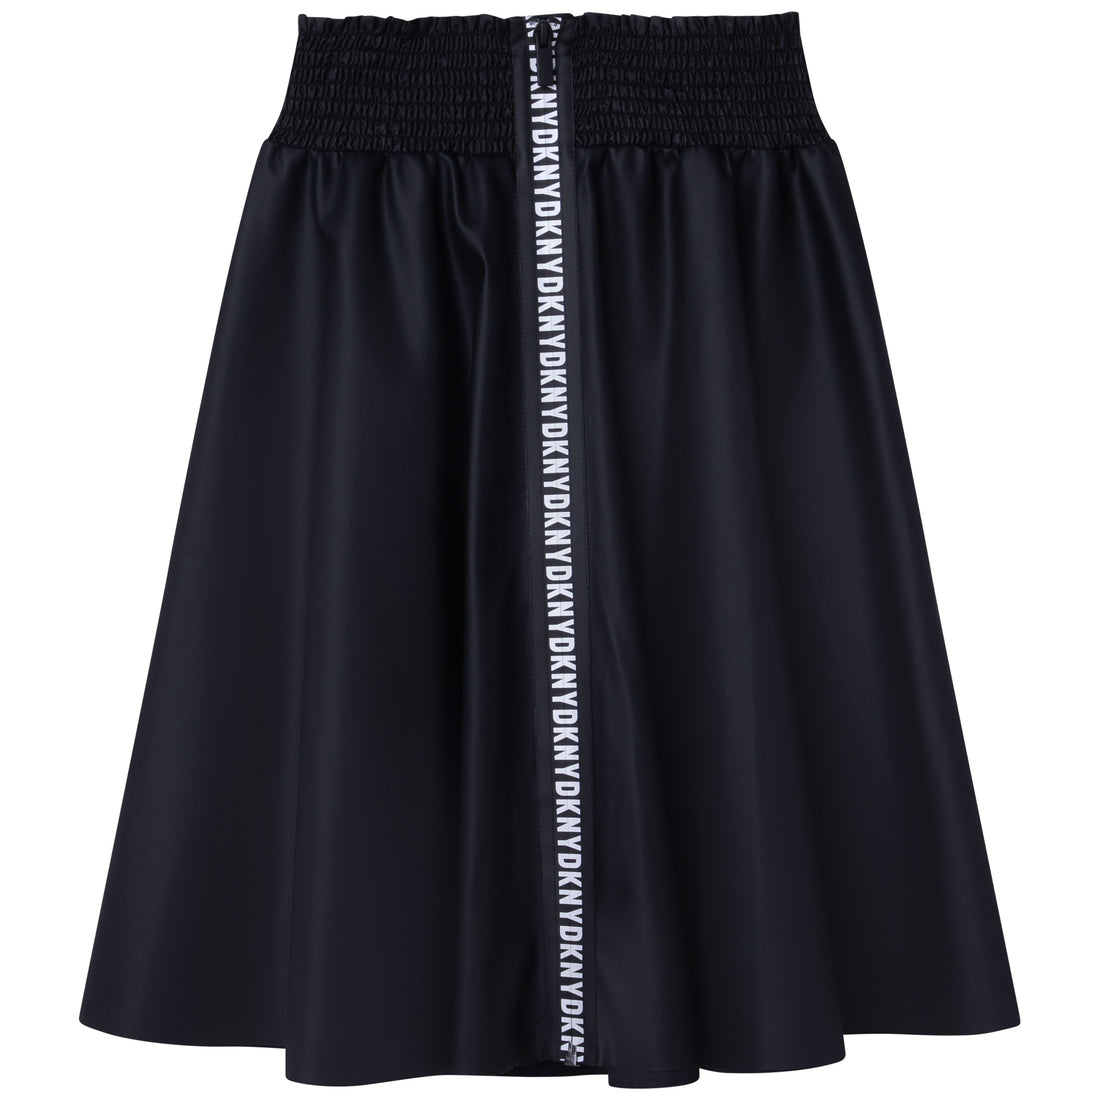 Dkny Skirt Style: D33595